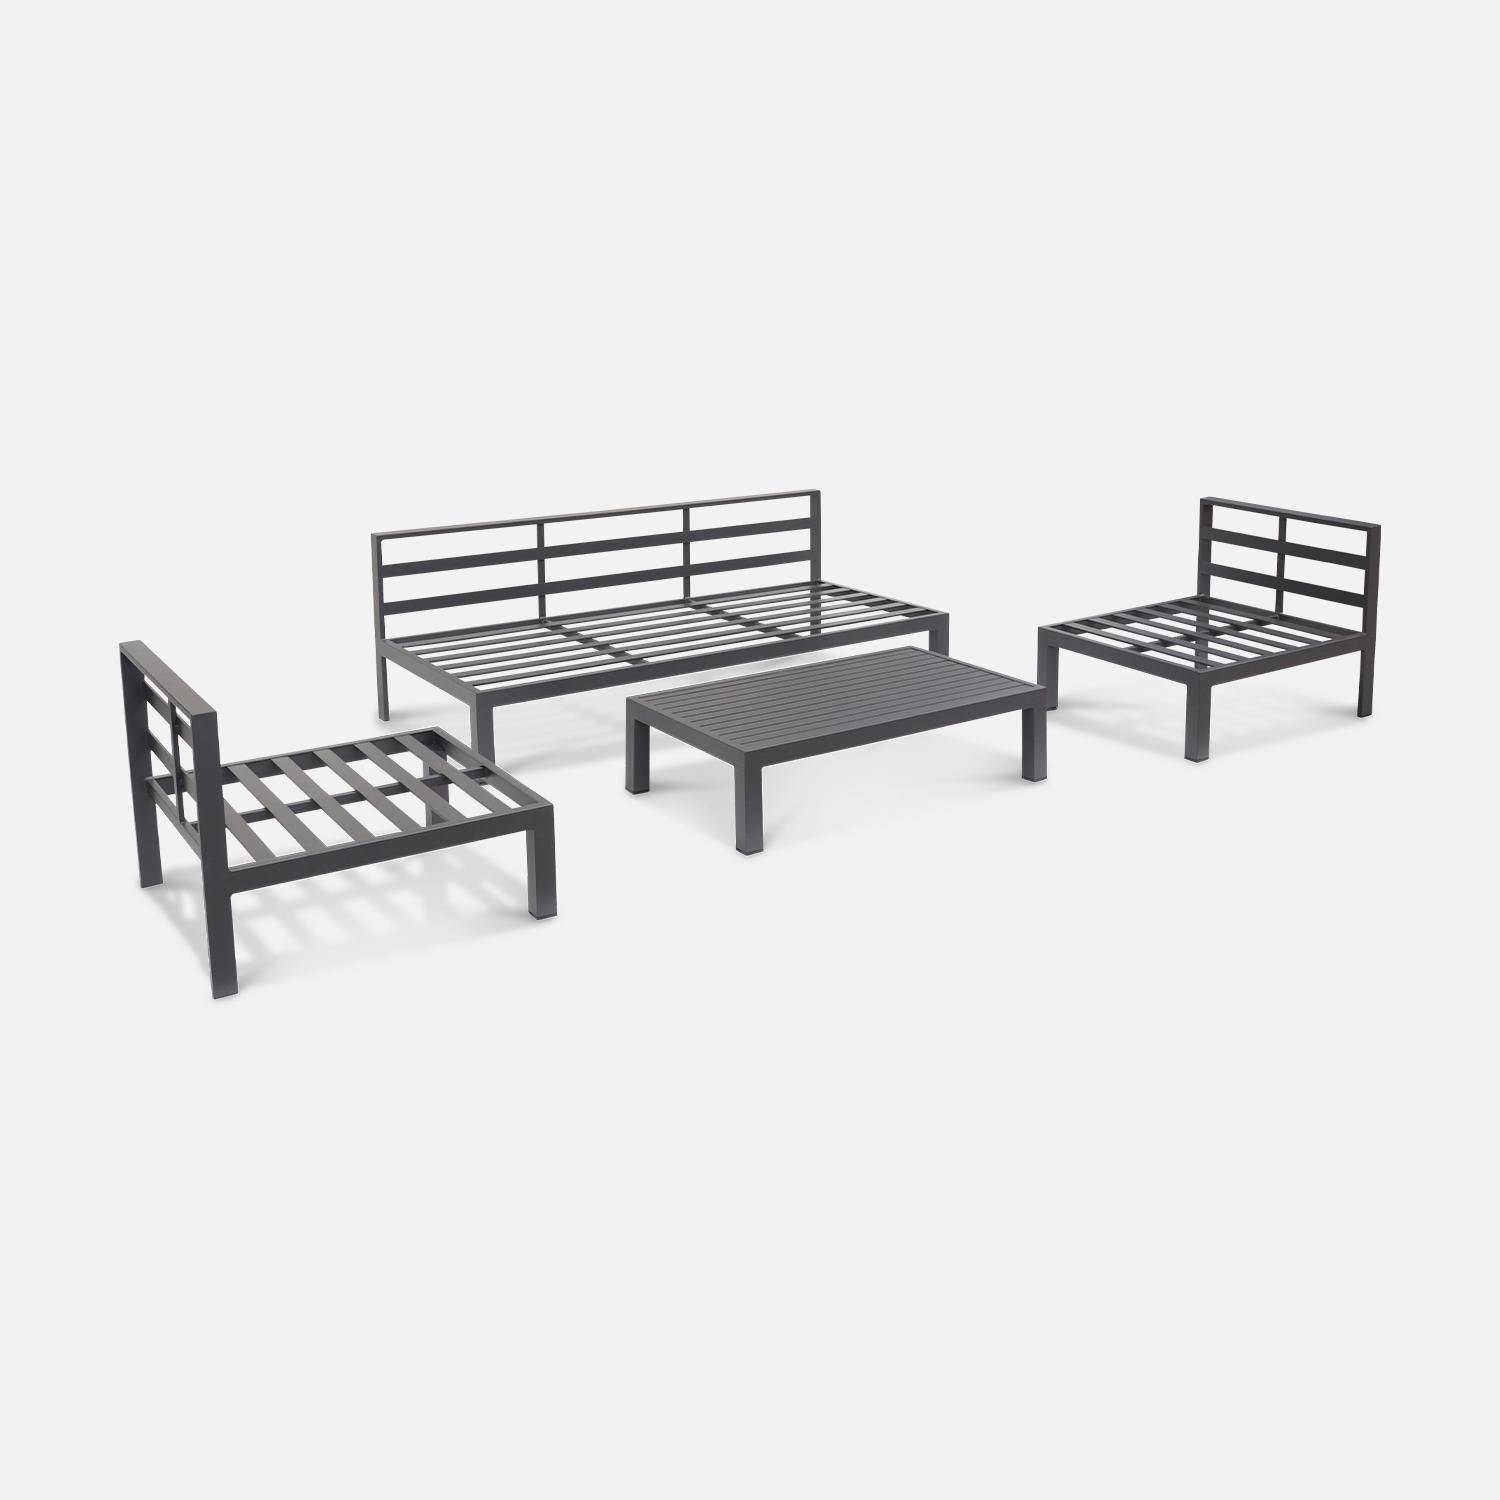 Conjunto de muebles de jardín de aluminio 4 plazas - asientos profundos - Rieti - gris antracita Photo5